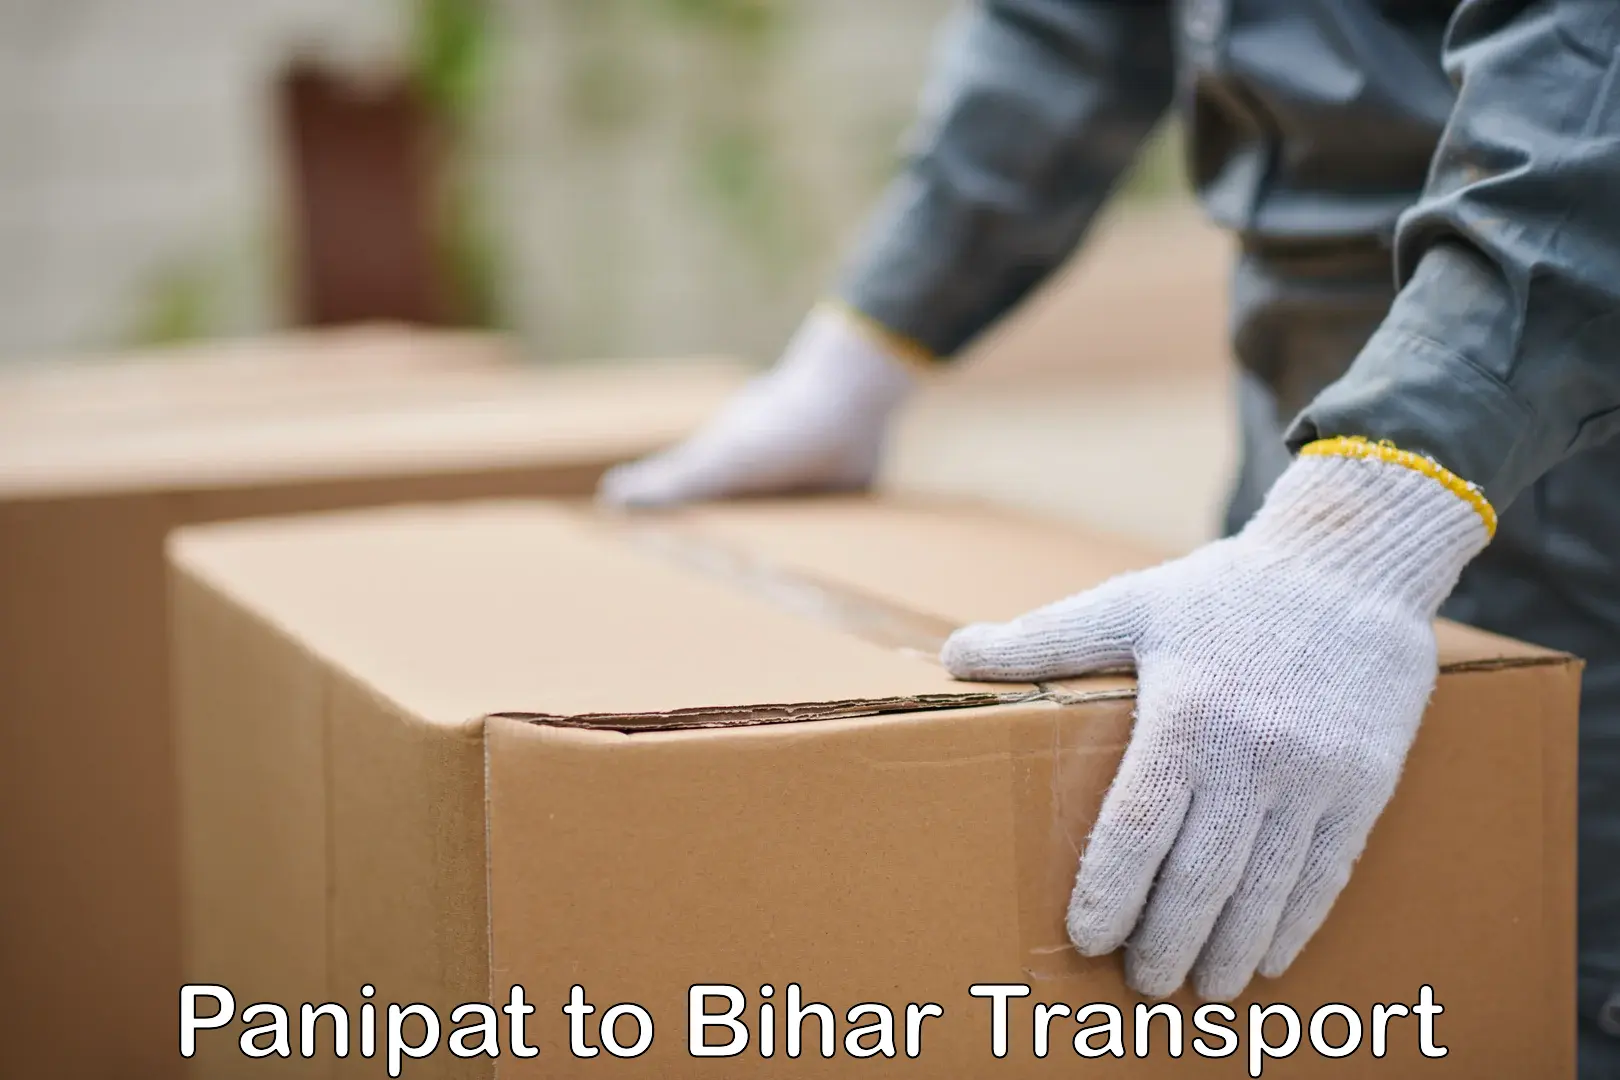 Lorry transport service Panipat to Bihar